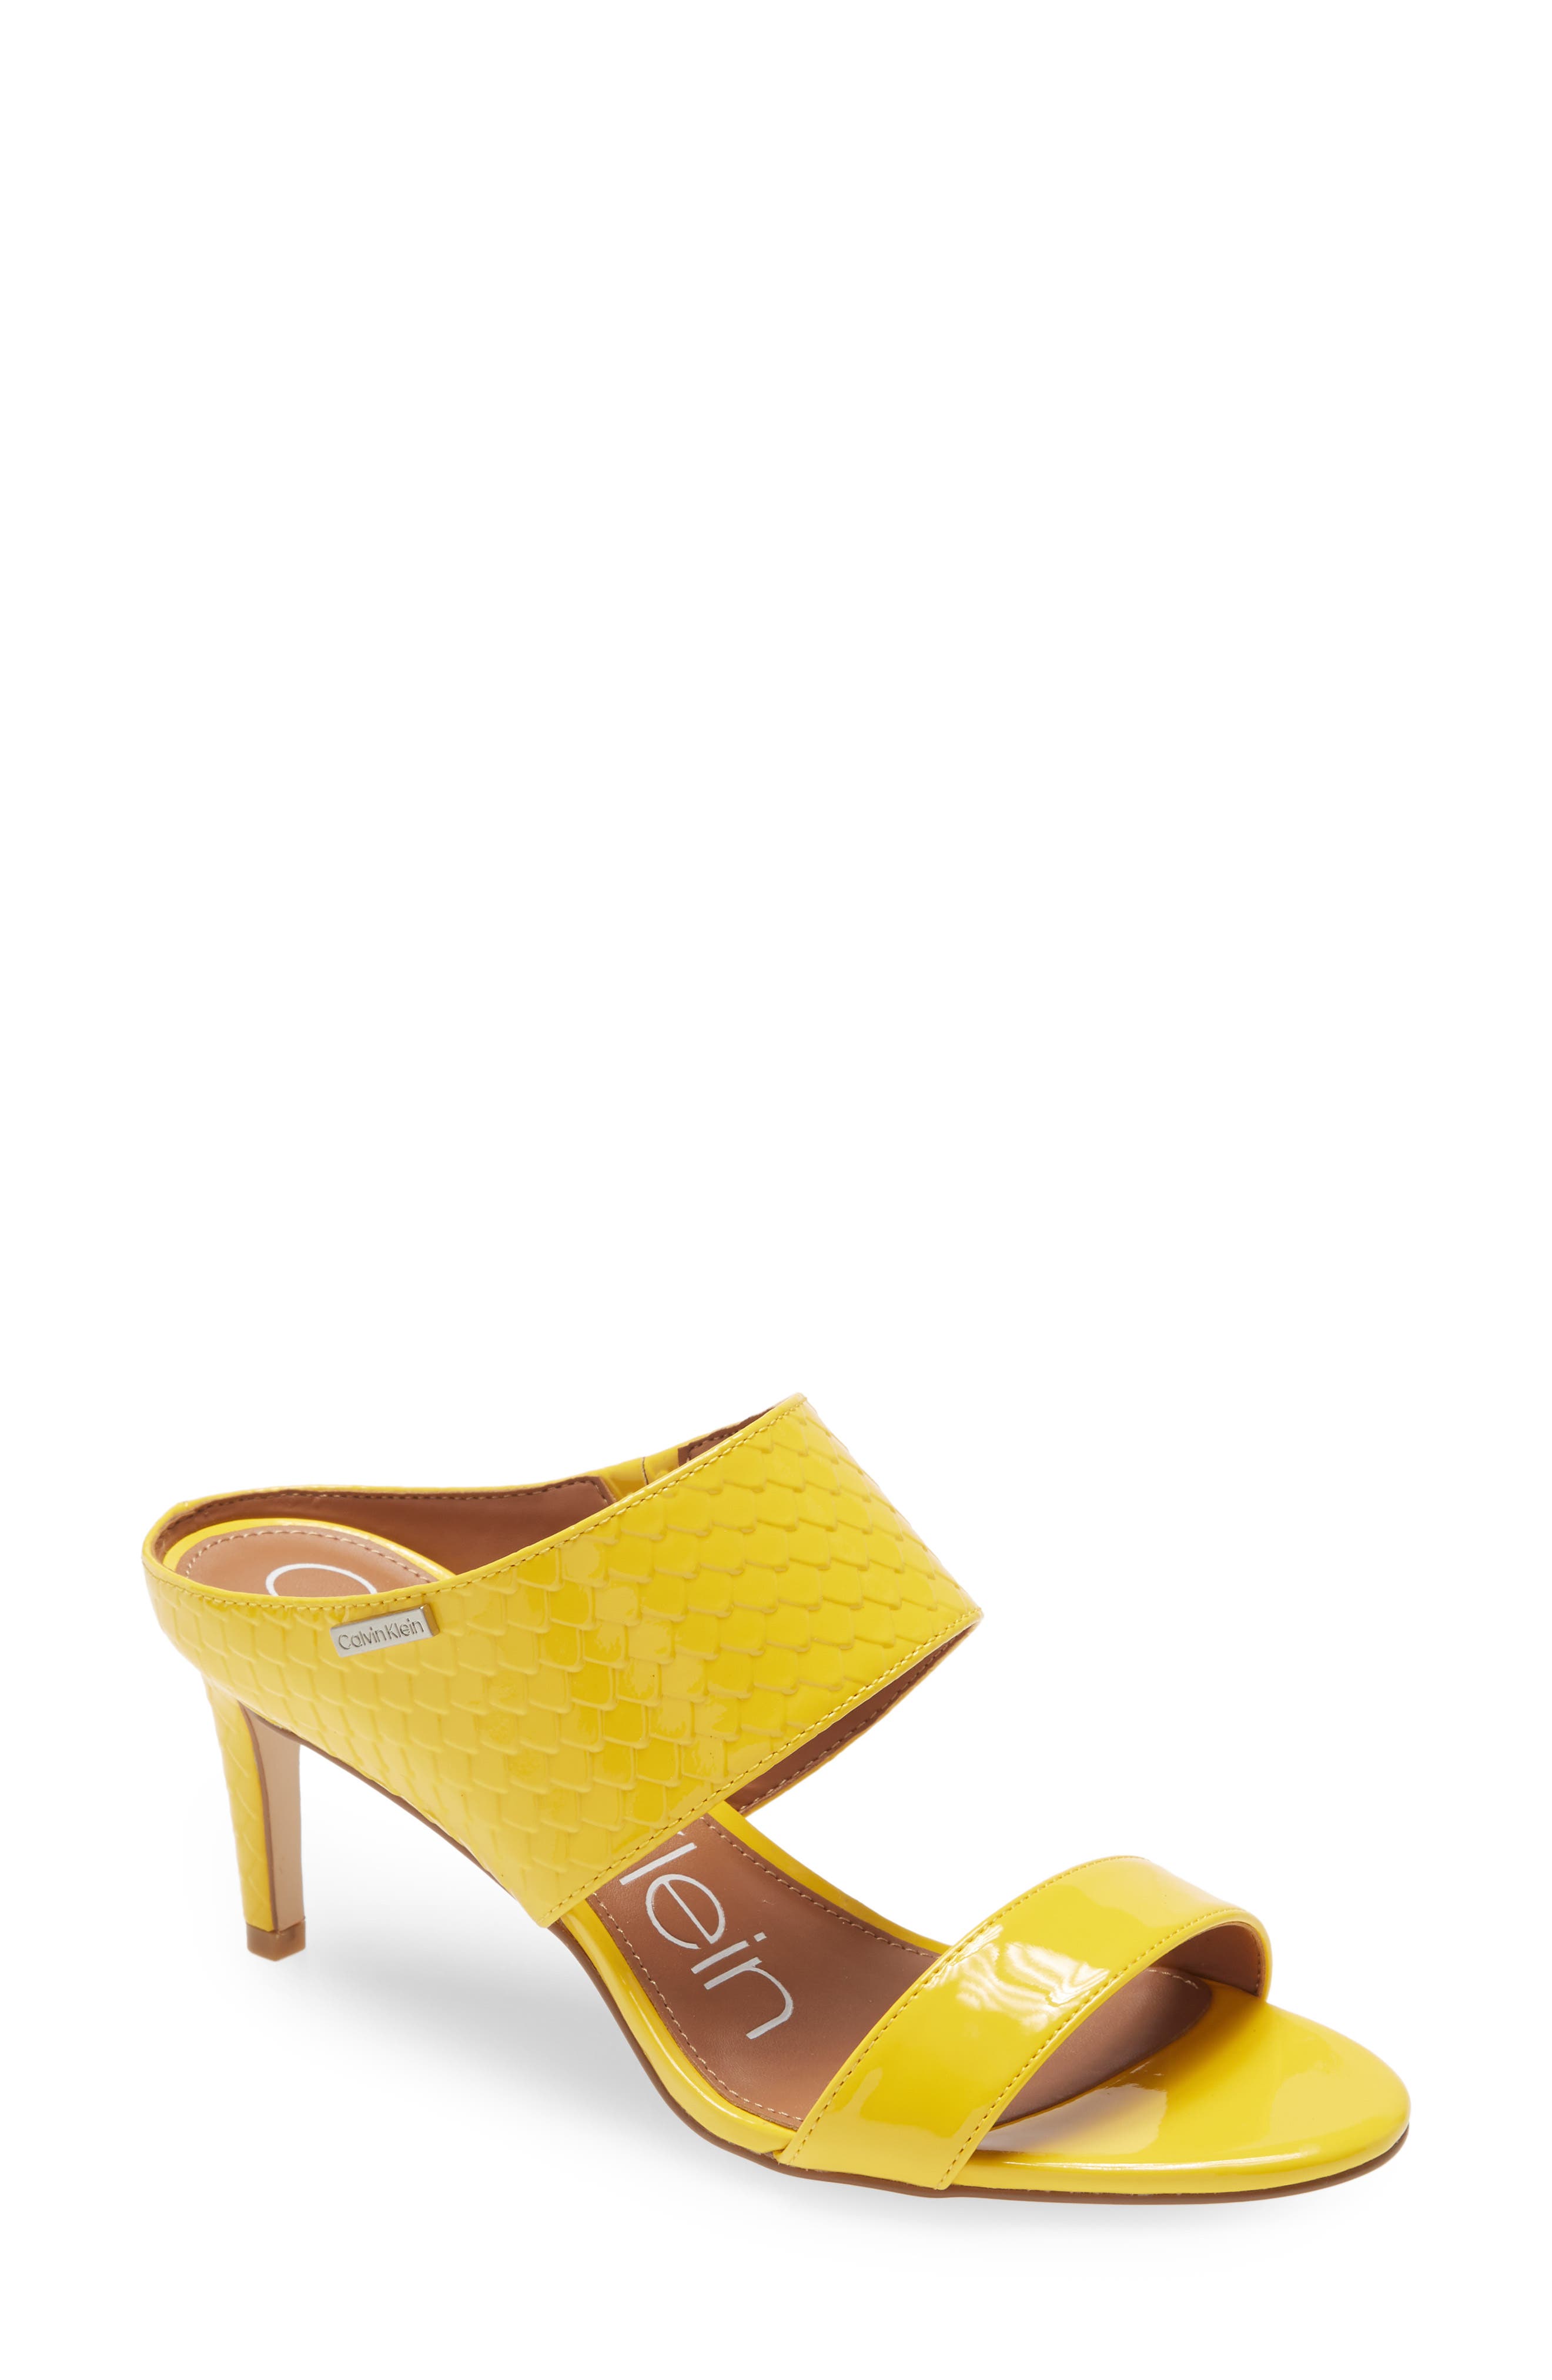 yellow sandal heels